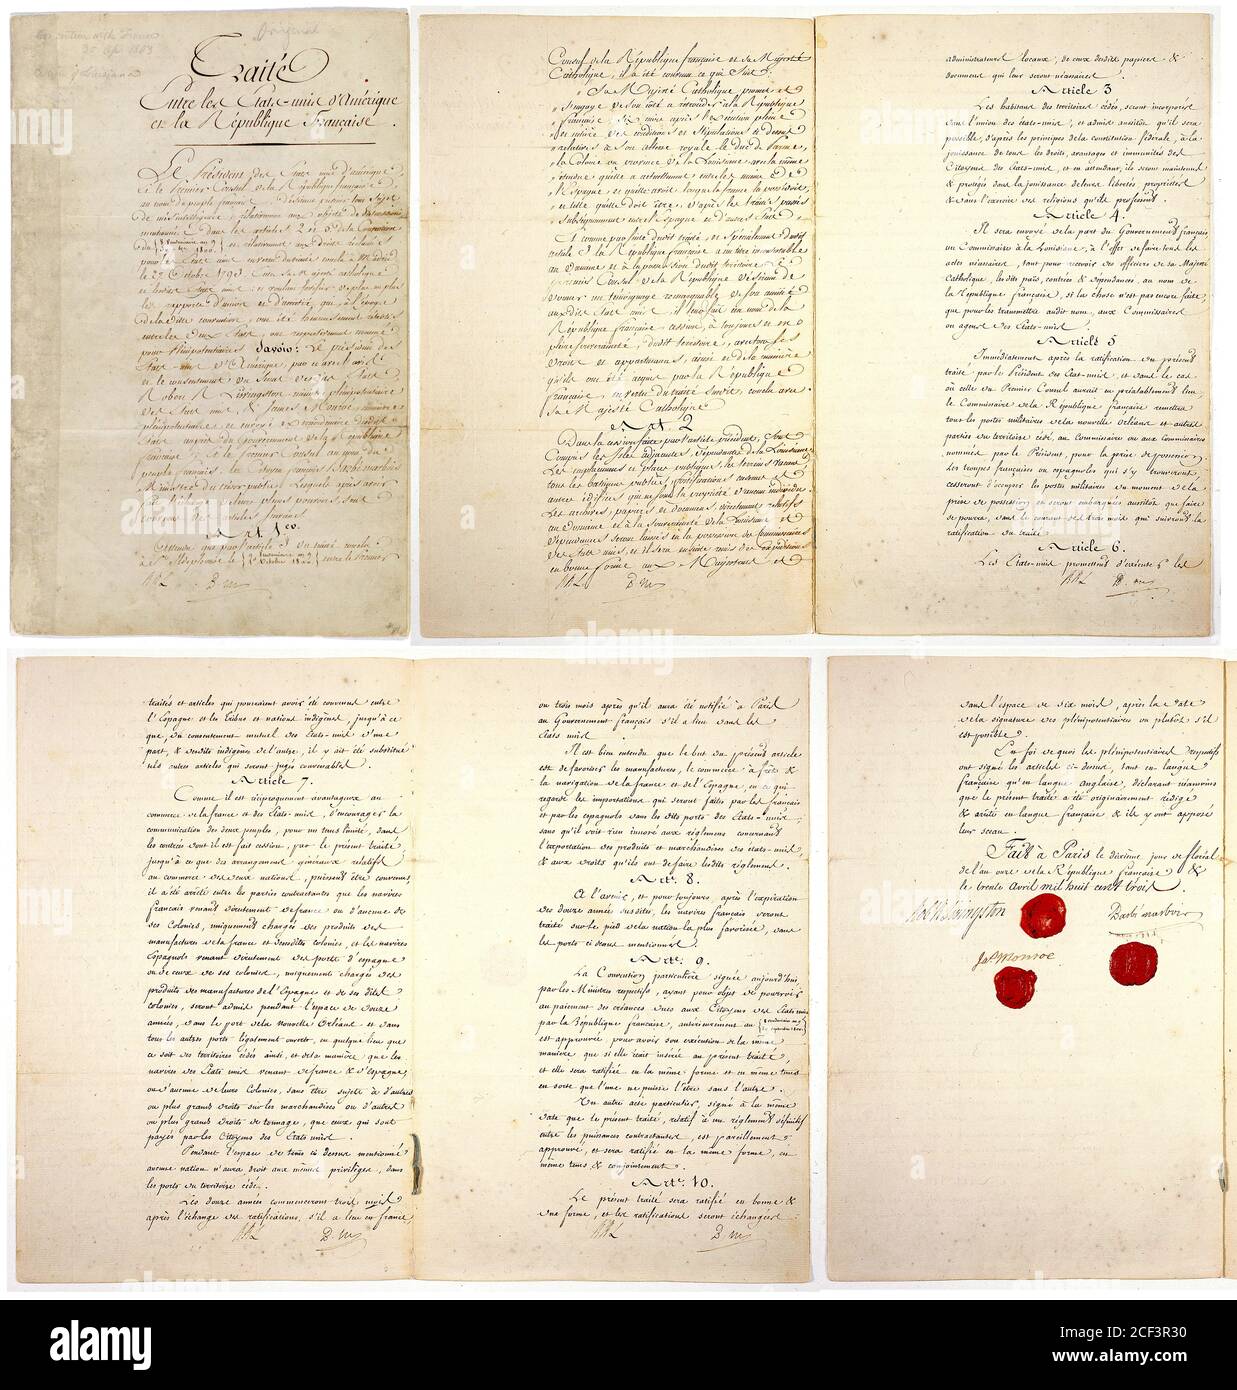 Compra de Luisiana. El Tratado original de Compra de Luisiana de abril de 1803 firmado por el Presidente James Monroe, François Barbé-Marbois y el Ministro de los Estados Unidos a Francia, Robert Livingston Foto de stock